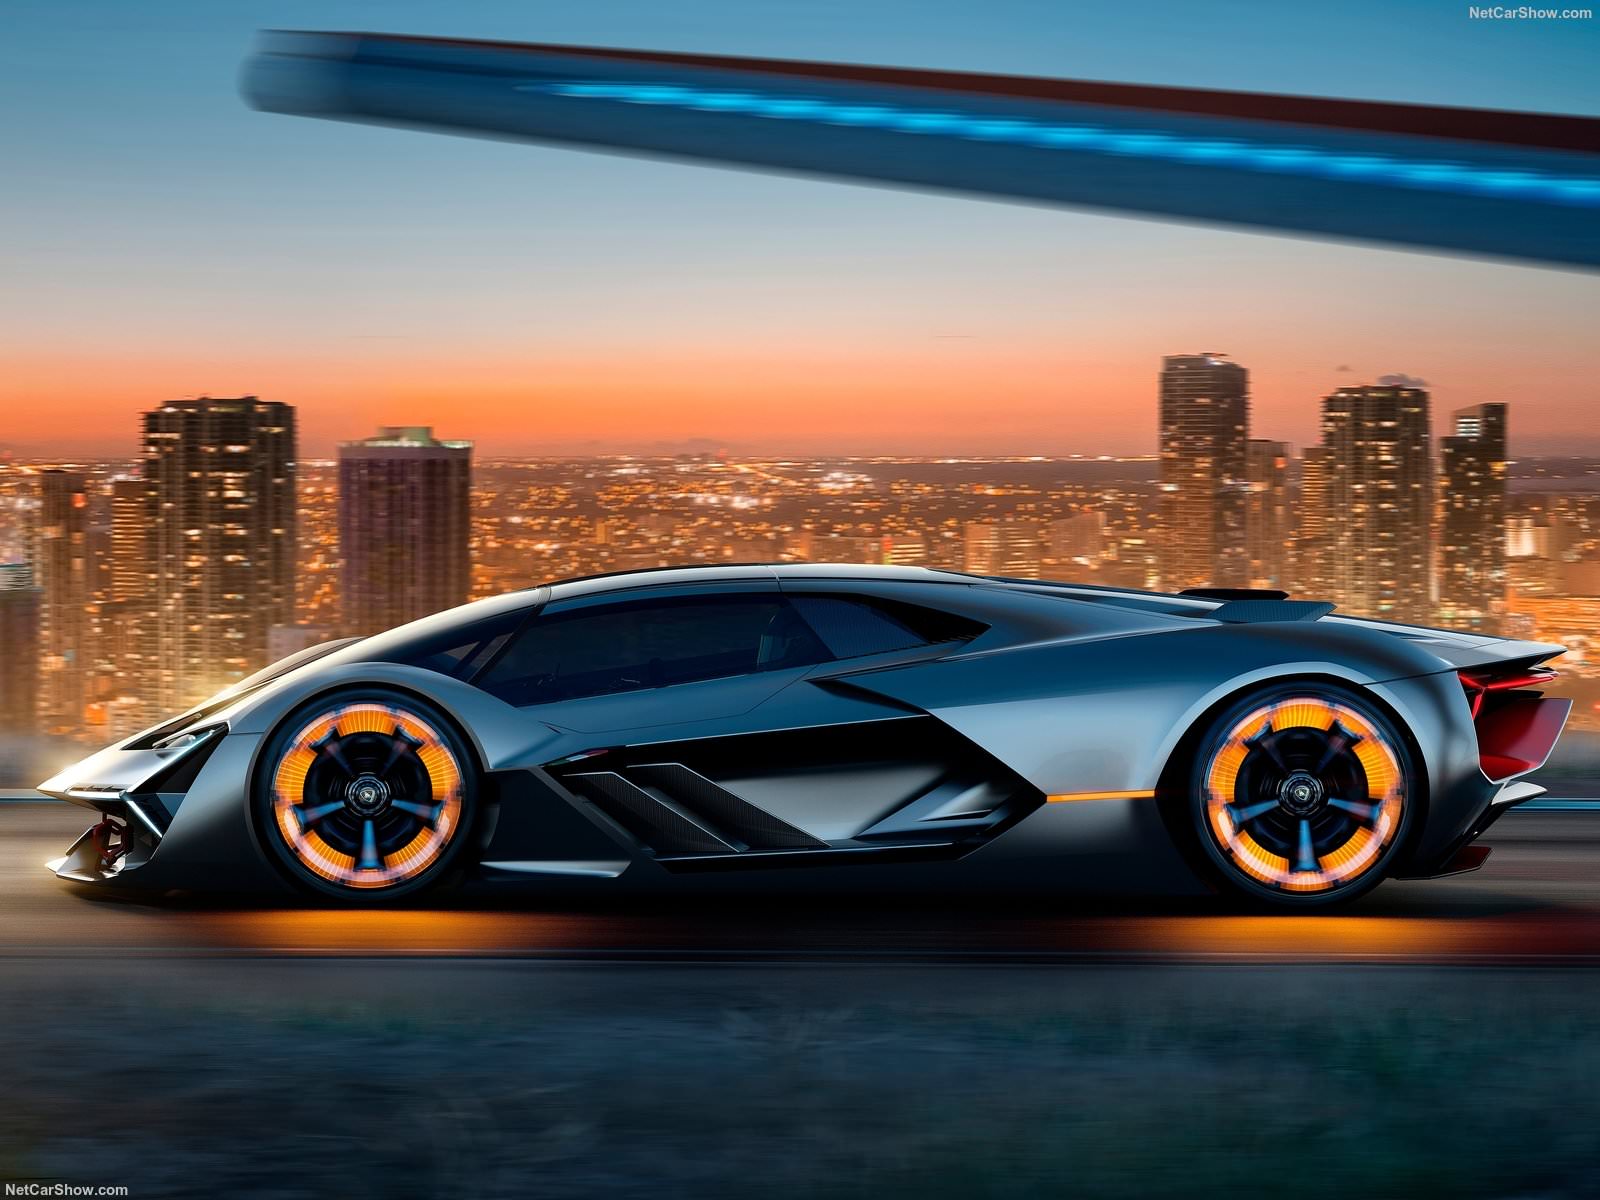 Lamborghini Terzo Millennio 2017 Concept - Cars - Romania Super Stunt -  Forums